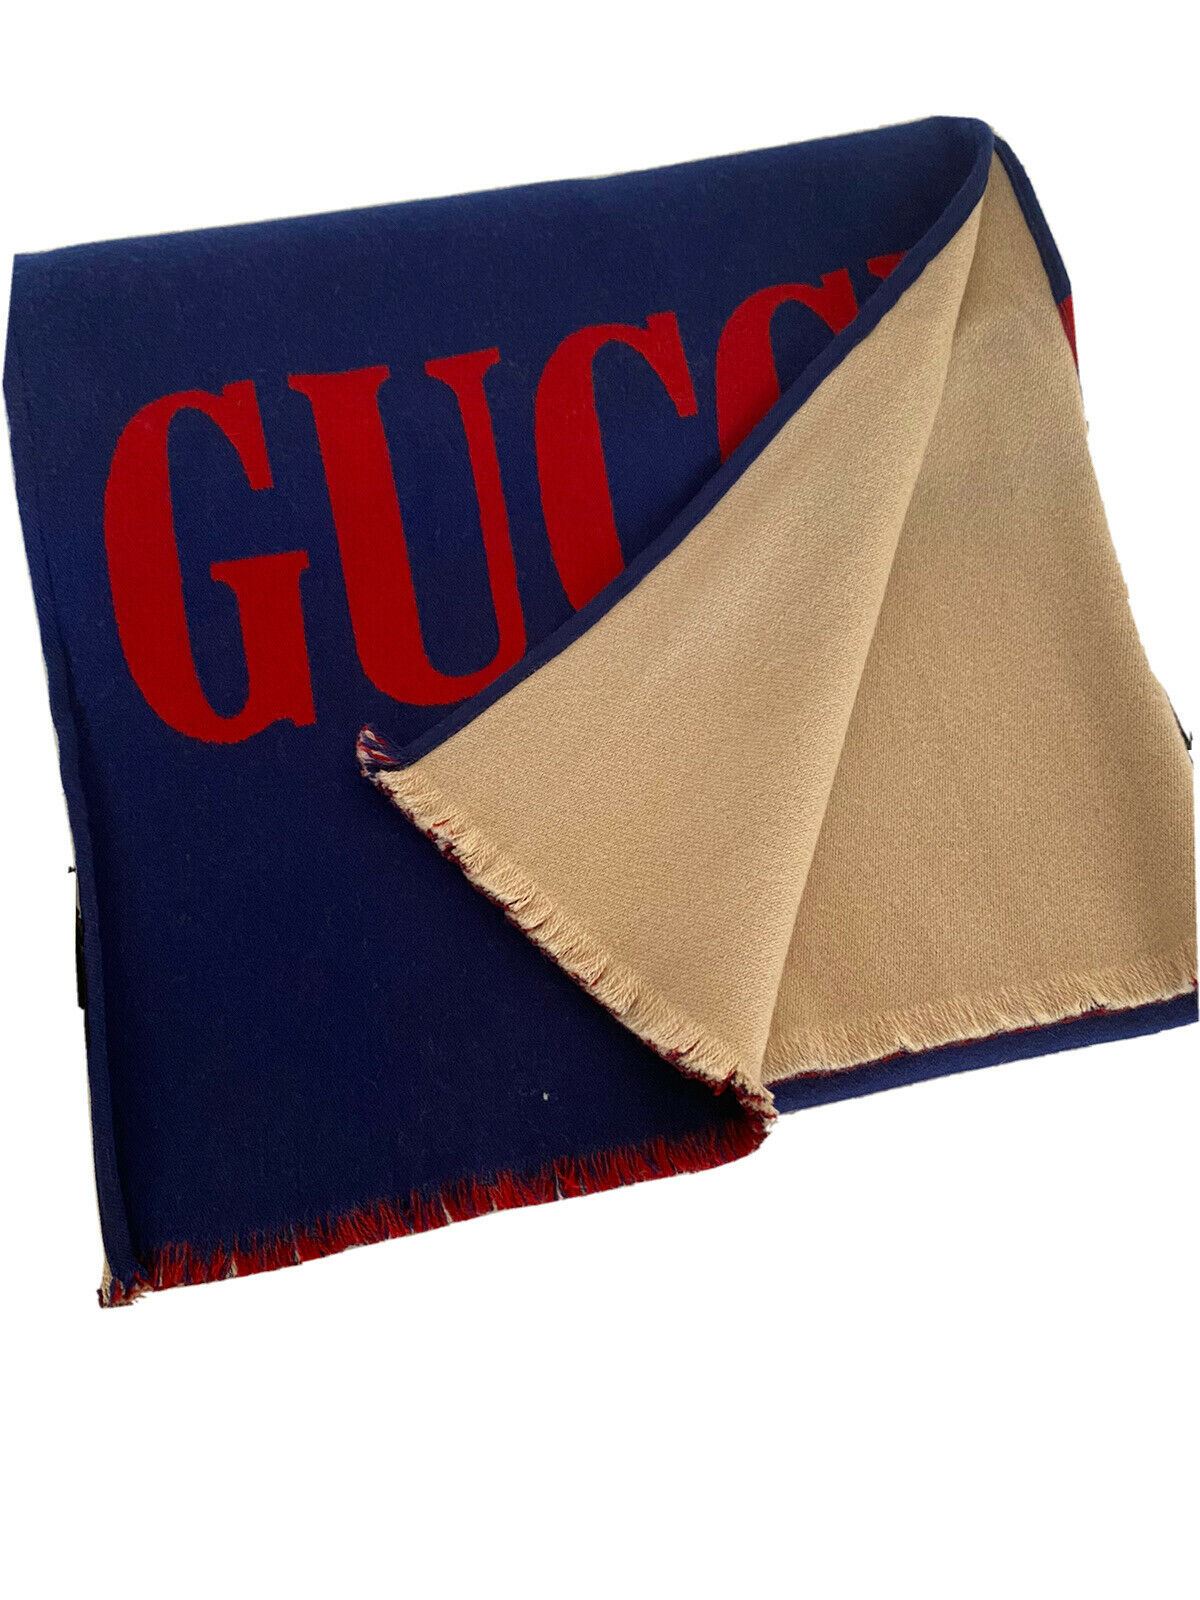 Neu mit Etikett: Gucci Guccium Blauer Woll-/Seidenschal 525559 35x180 Hergestellt in Italien 